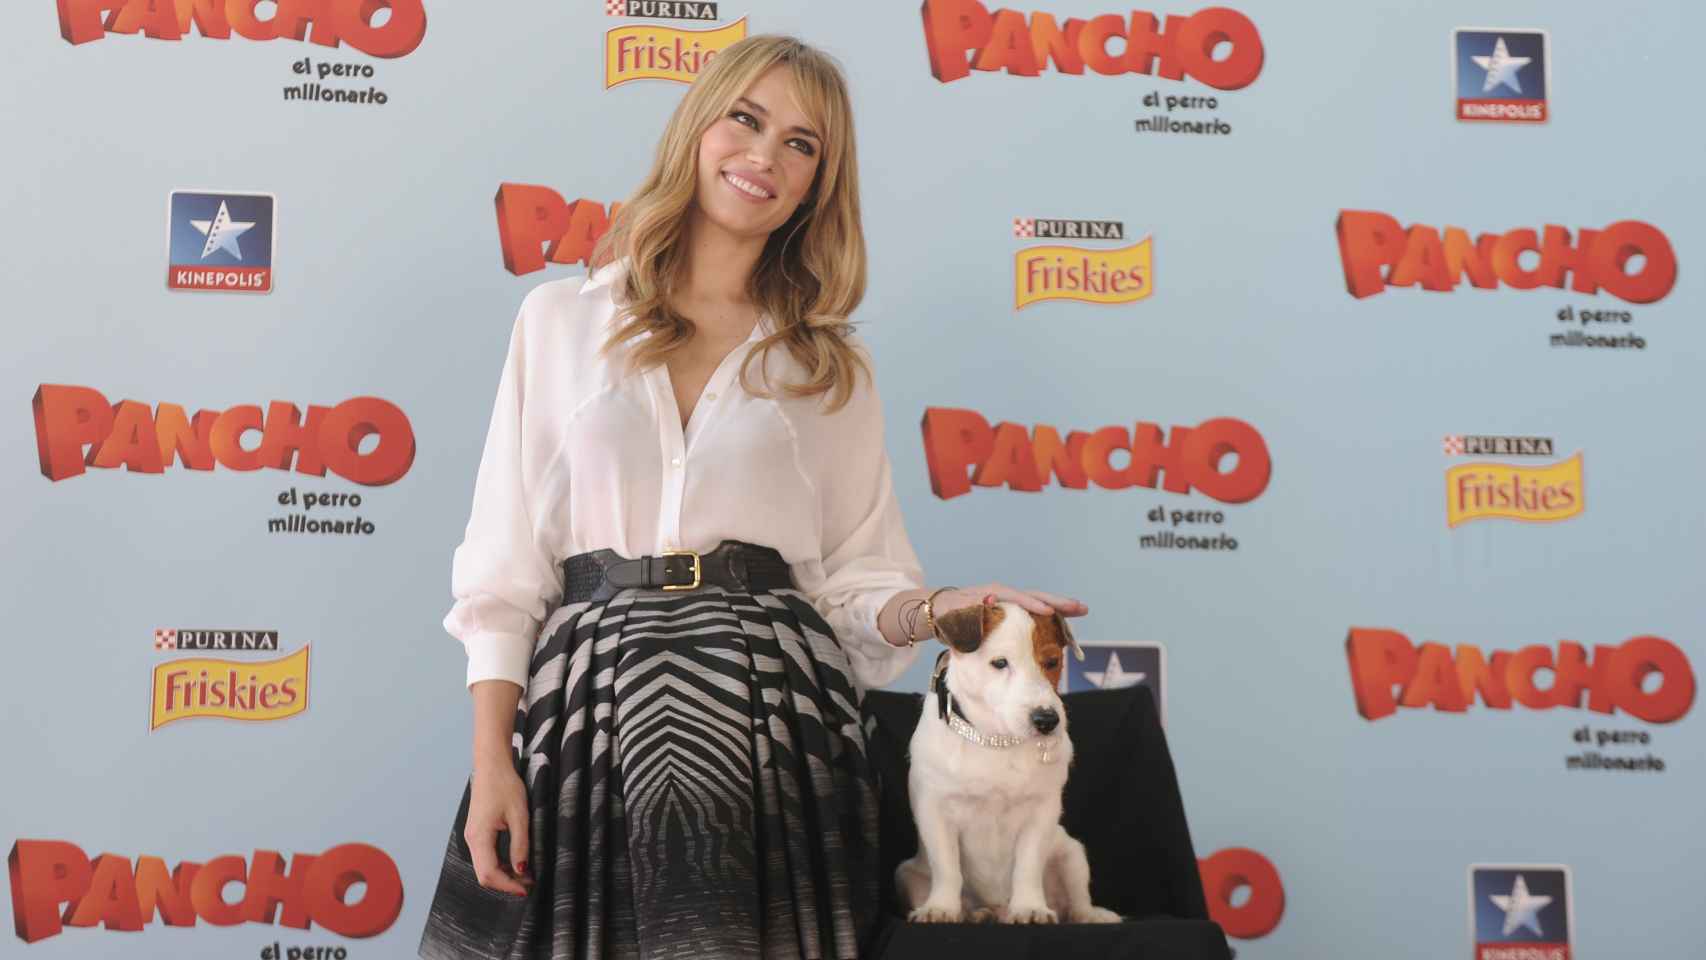 Patricia Conde junto al protagonista en la premier de la película Pancho, el perro millonario